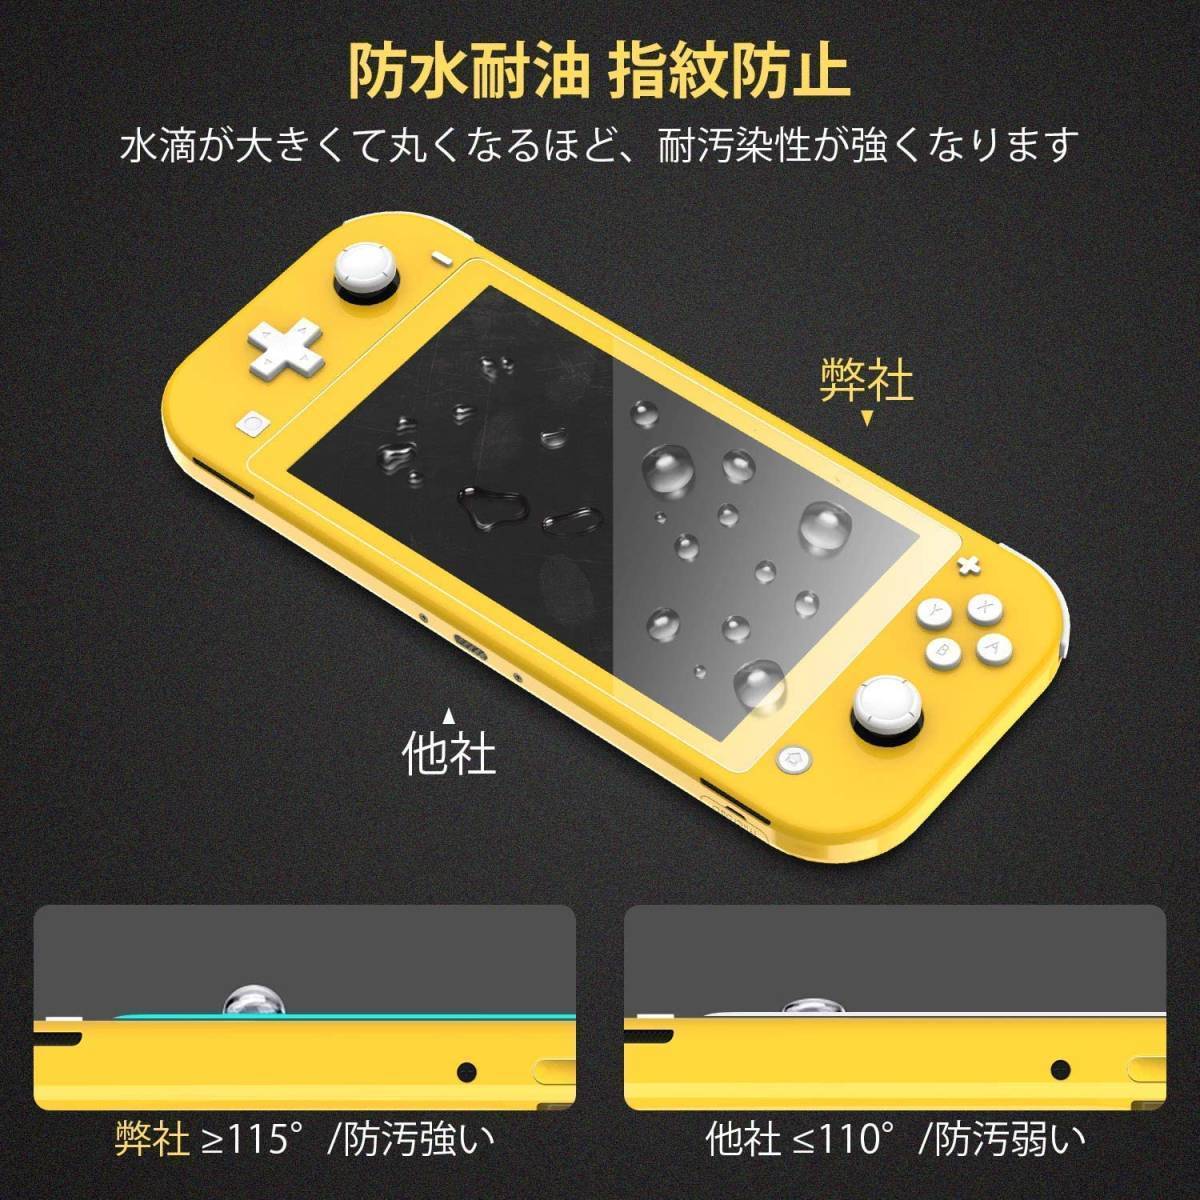 Nintendo Switch Lite専用 保護フィルム 【2枚セット】 HeysTop 9H高硬度 switch ライト 液晶保護 フィルム 任天堂 高透過率 指紋防止